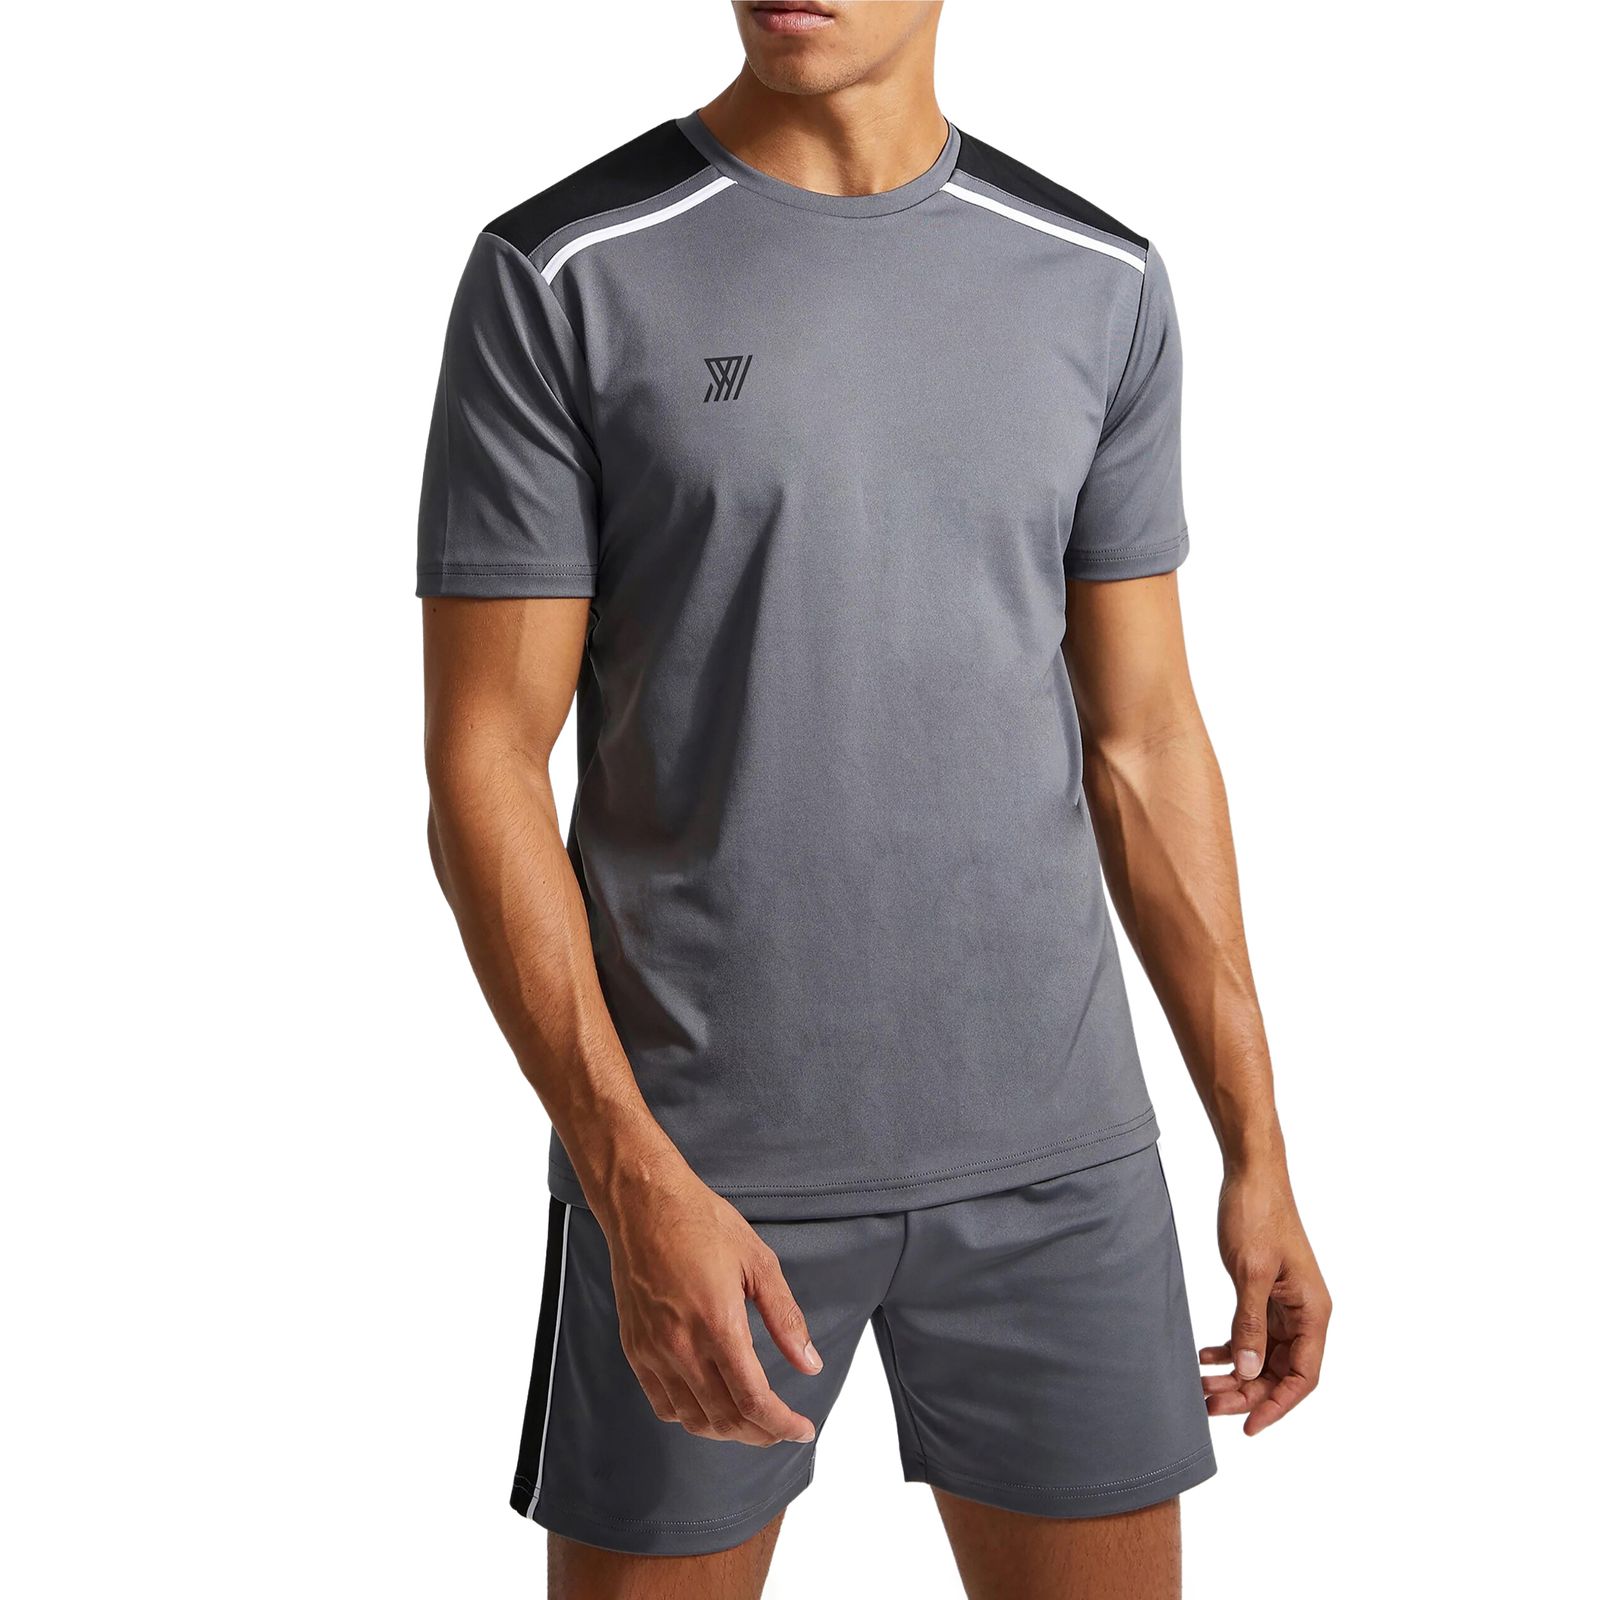 ست تی شرت و شلوارک ورزشی مردانه نوزده نودیک مدل ST1918 DGB -  - 1